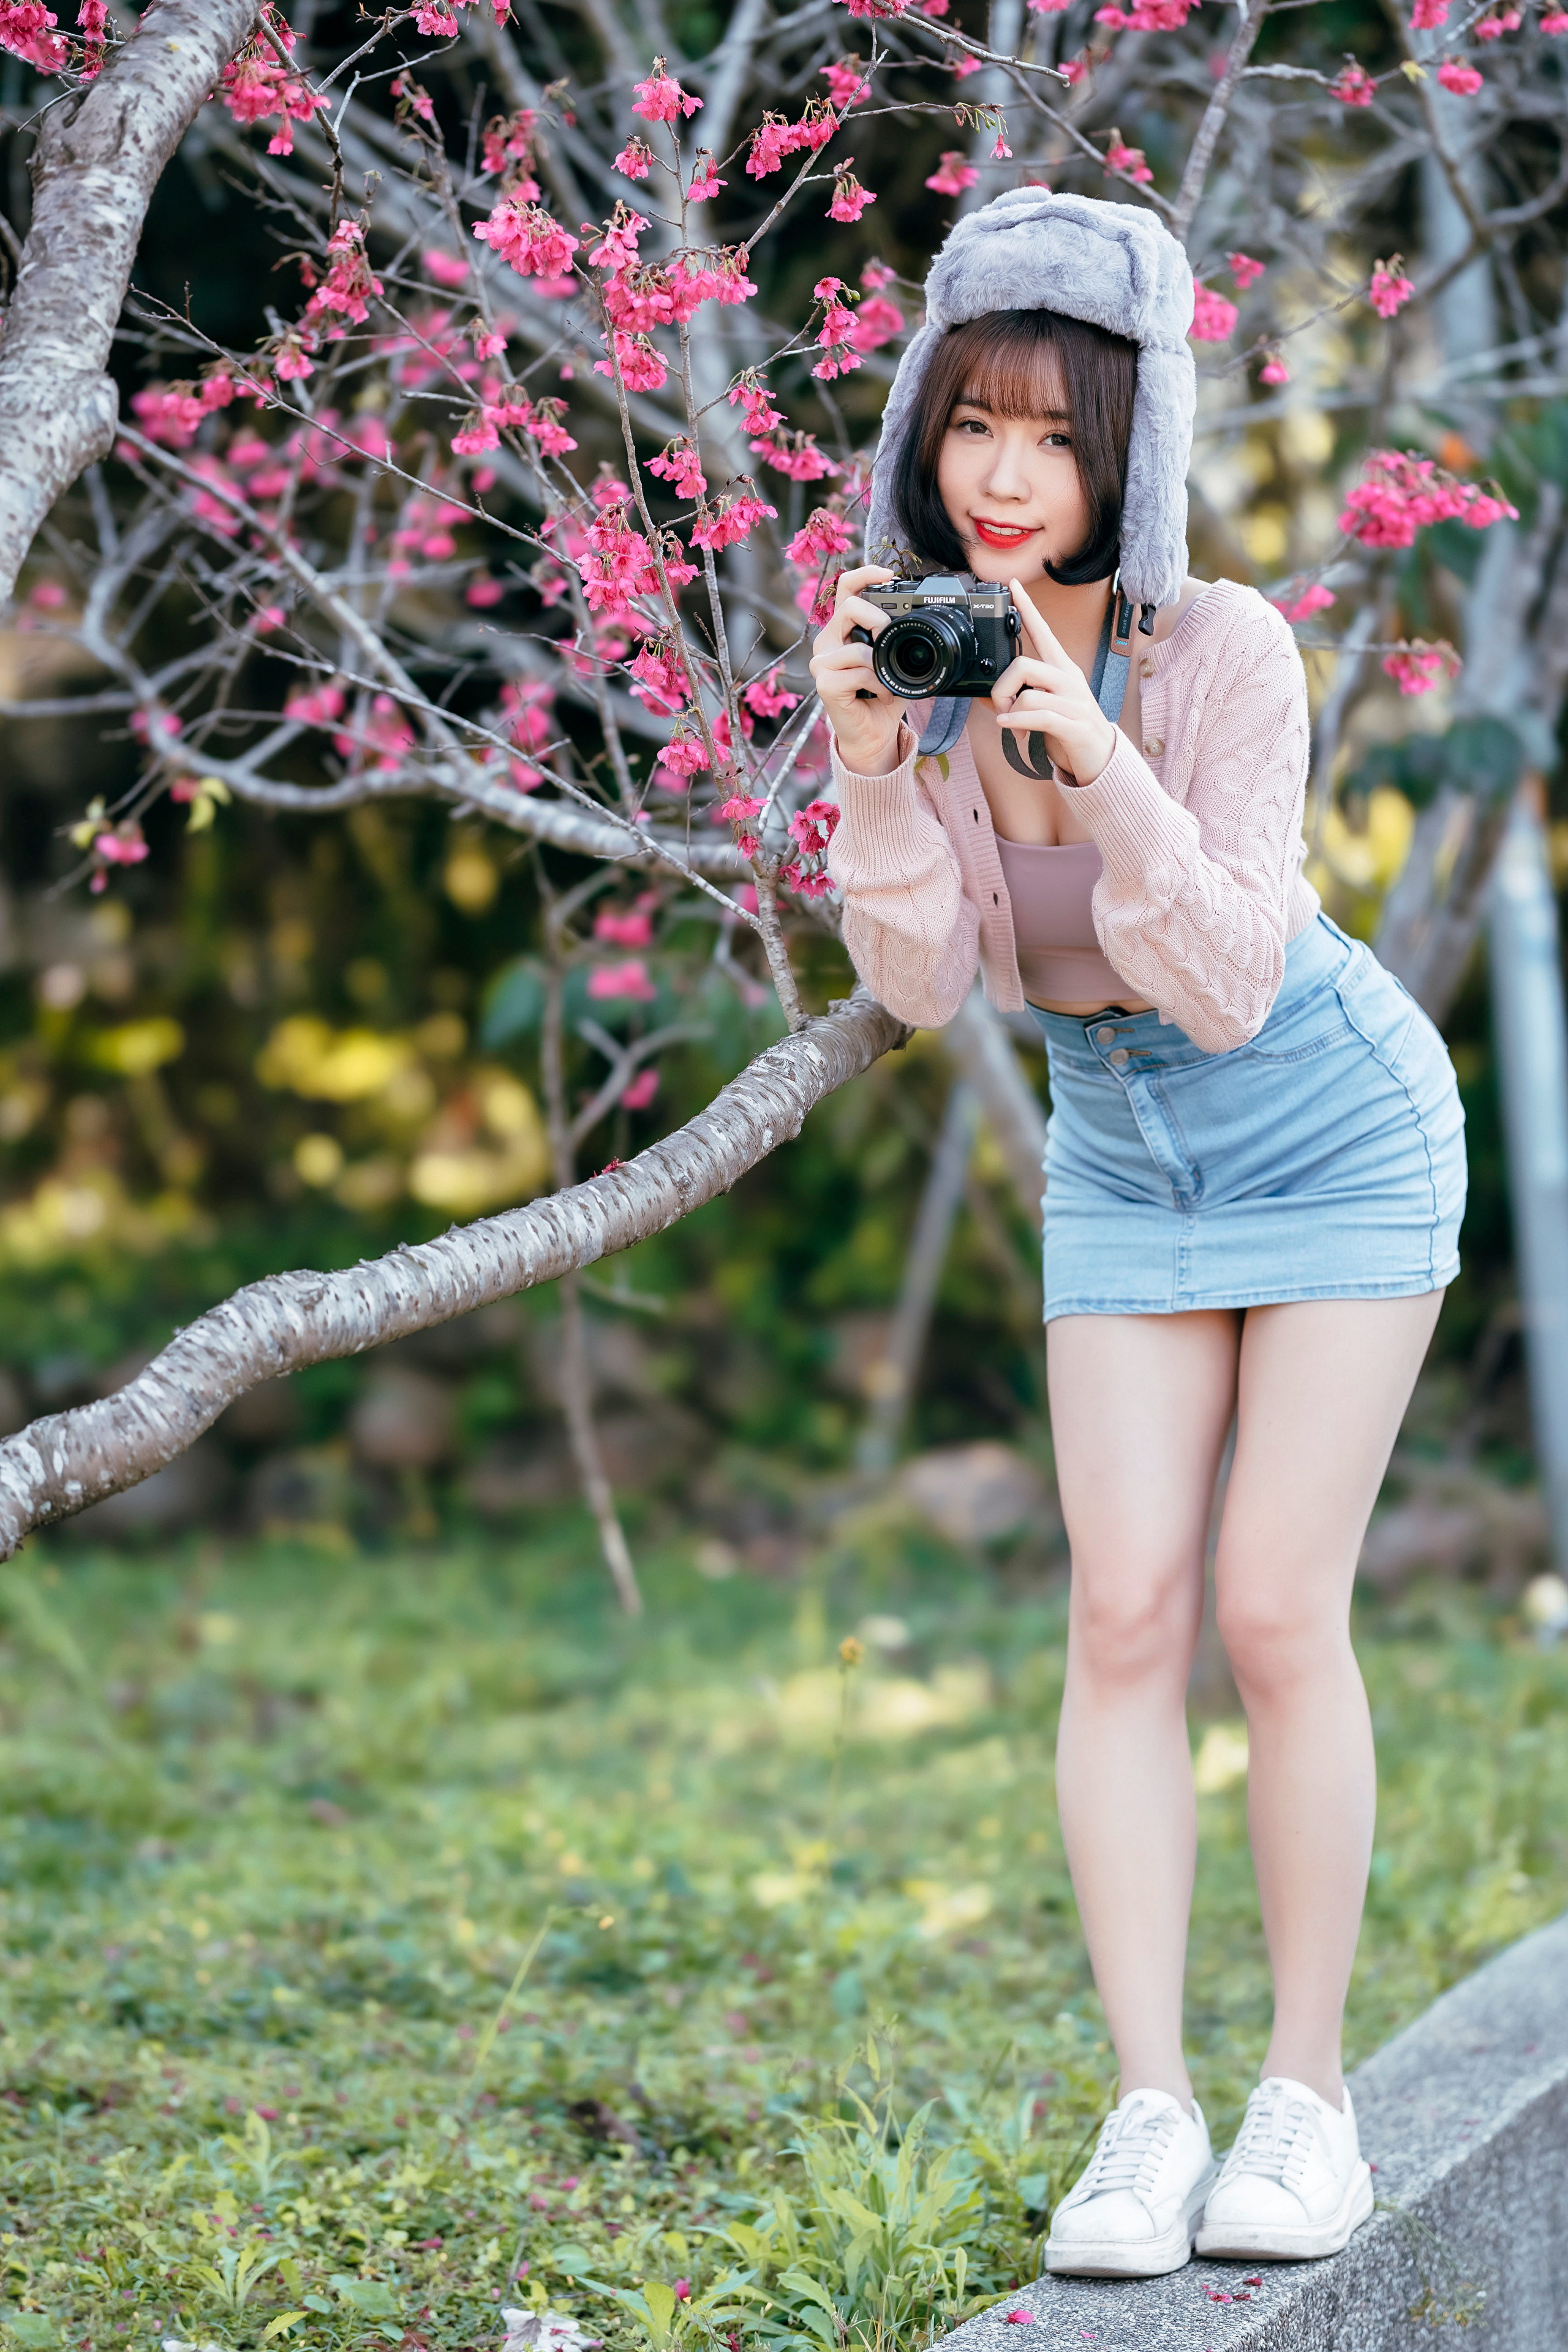 Asian Model Women Dark Hair Short Hair Fur Hat Jeans Skirt White Sneakers Grass Trees Depth Of Field 2560x3840